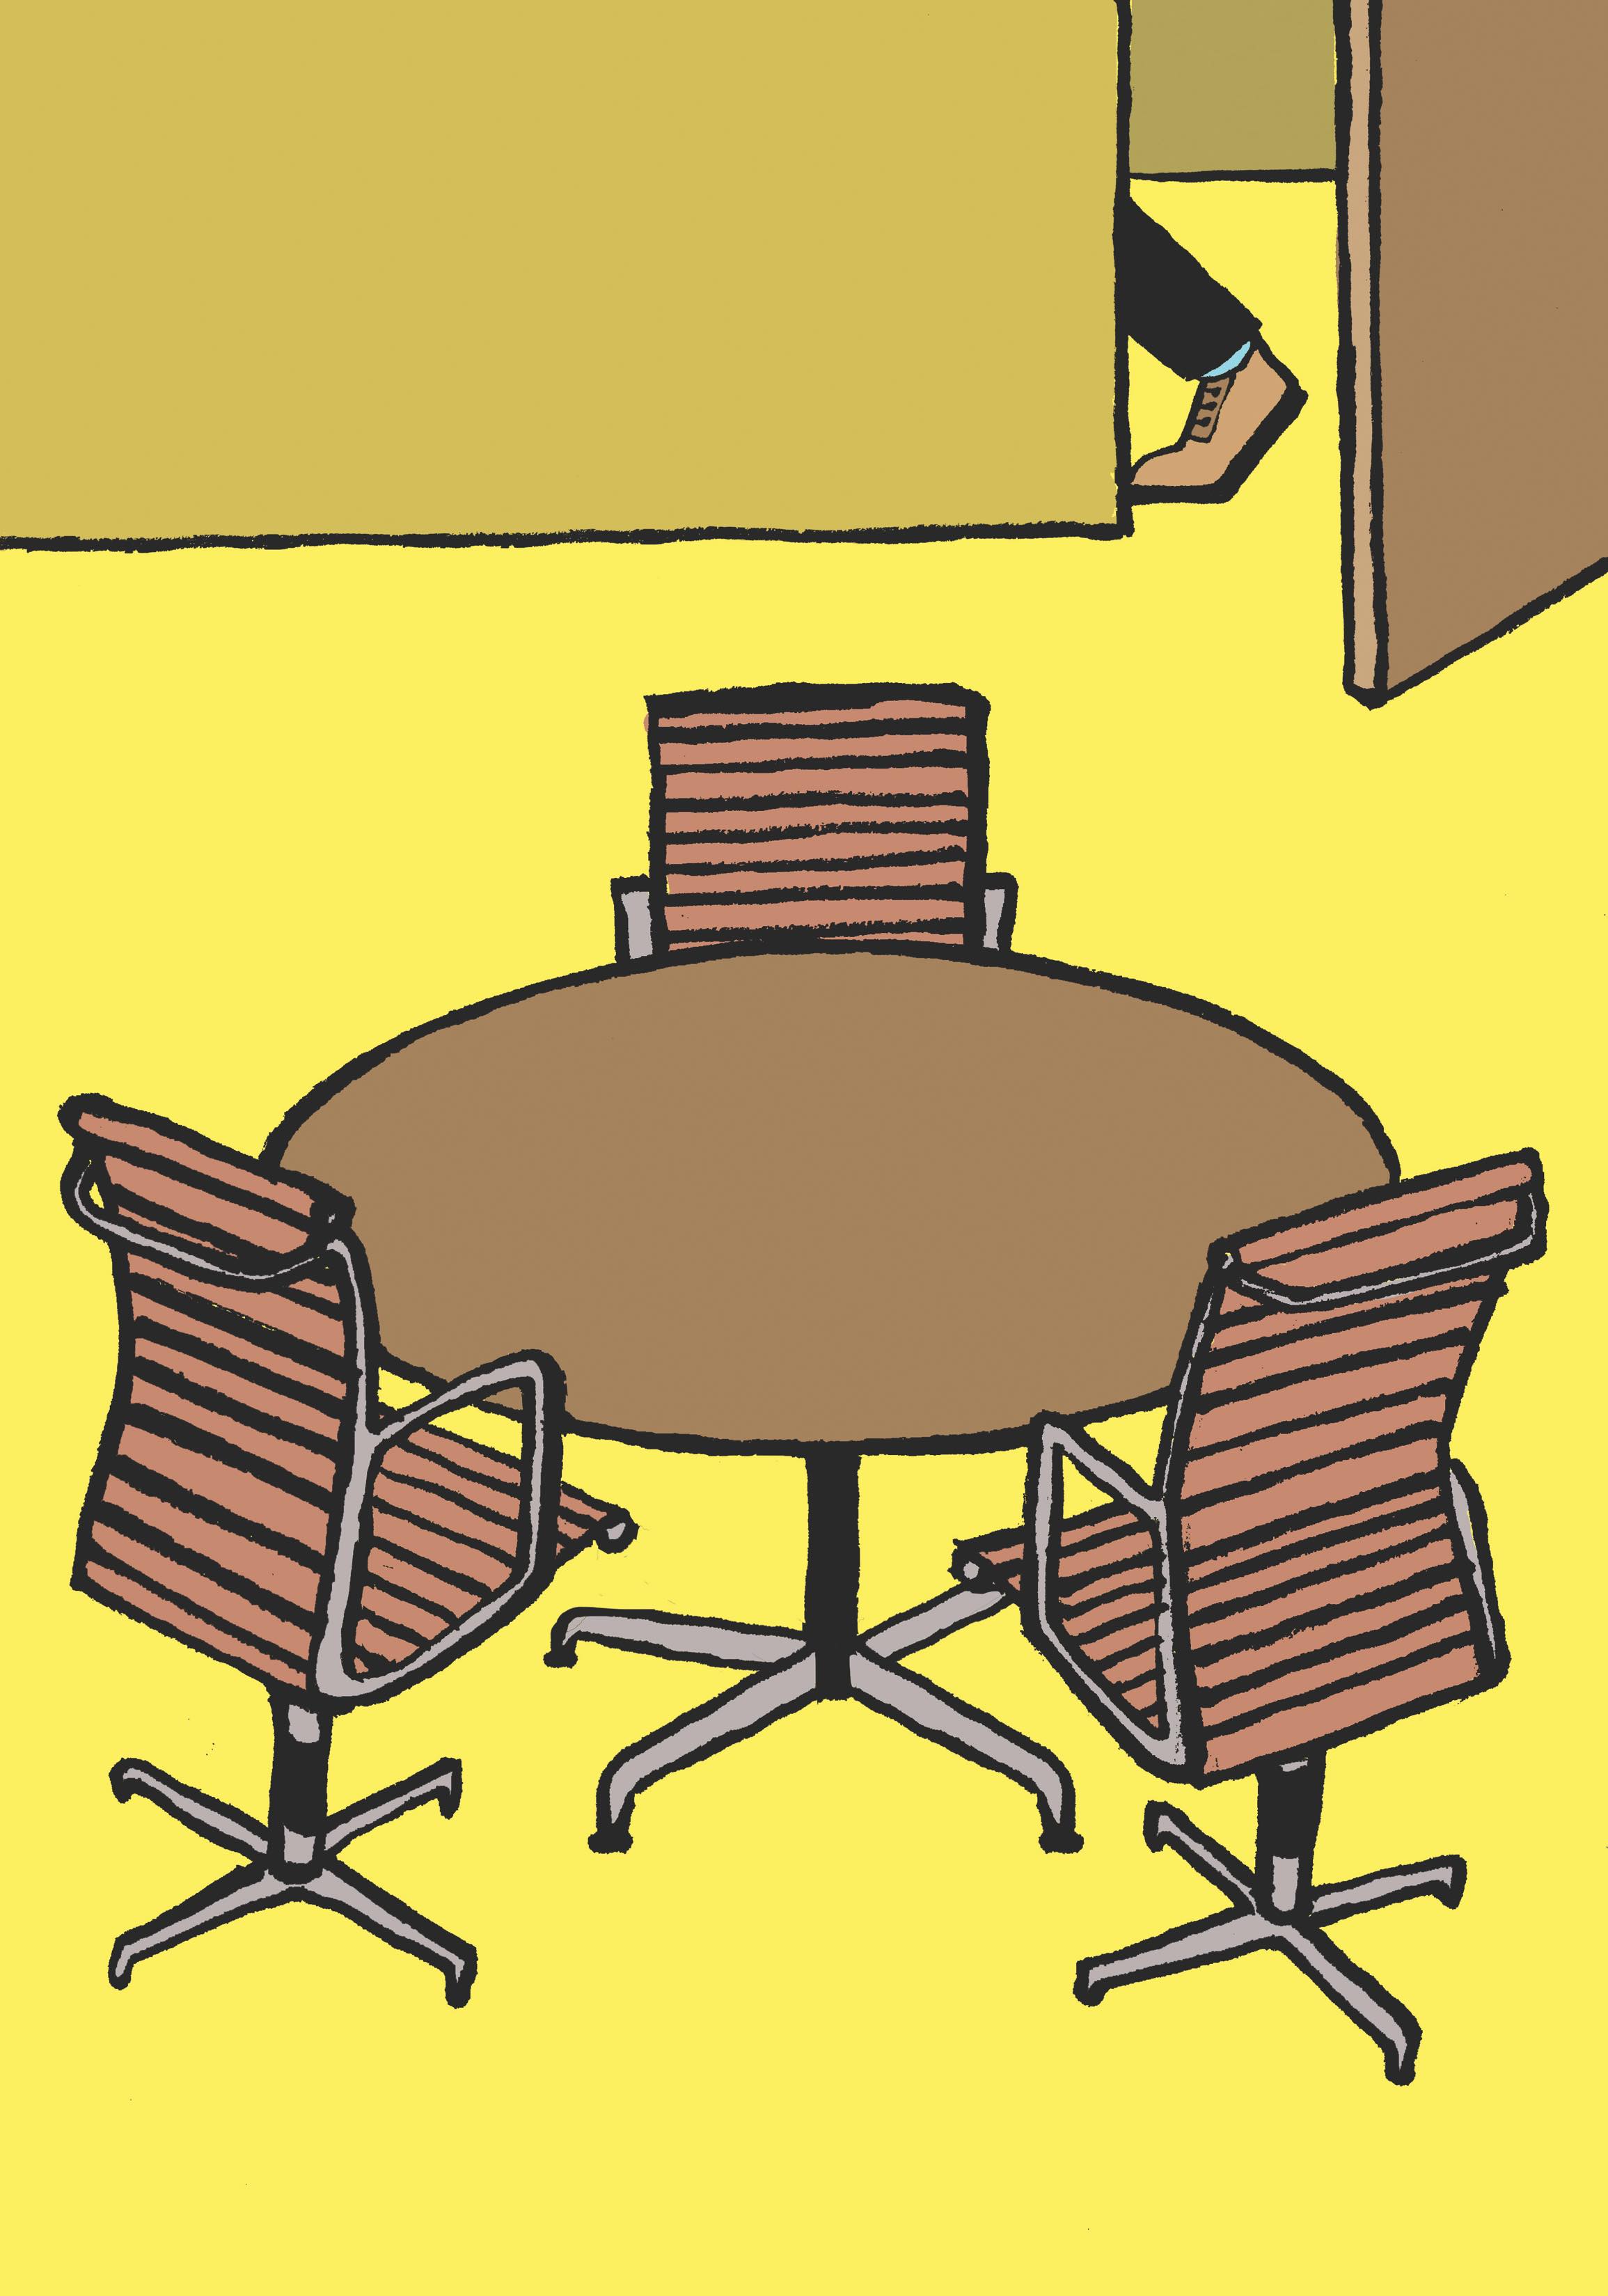 Une caricature de trois chaises situées autour d'une table ronde dans un espace de réunion autrement vide.